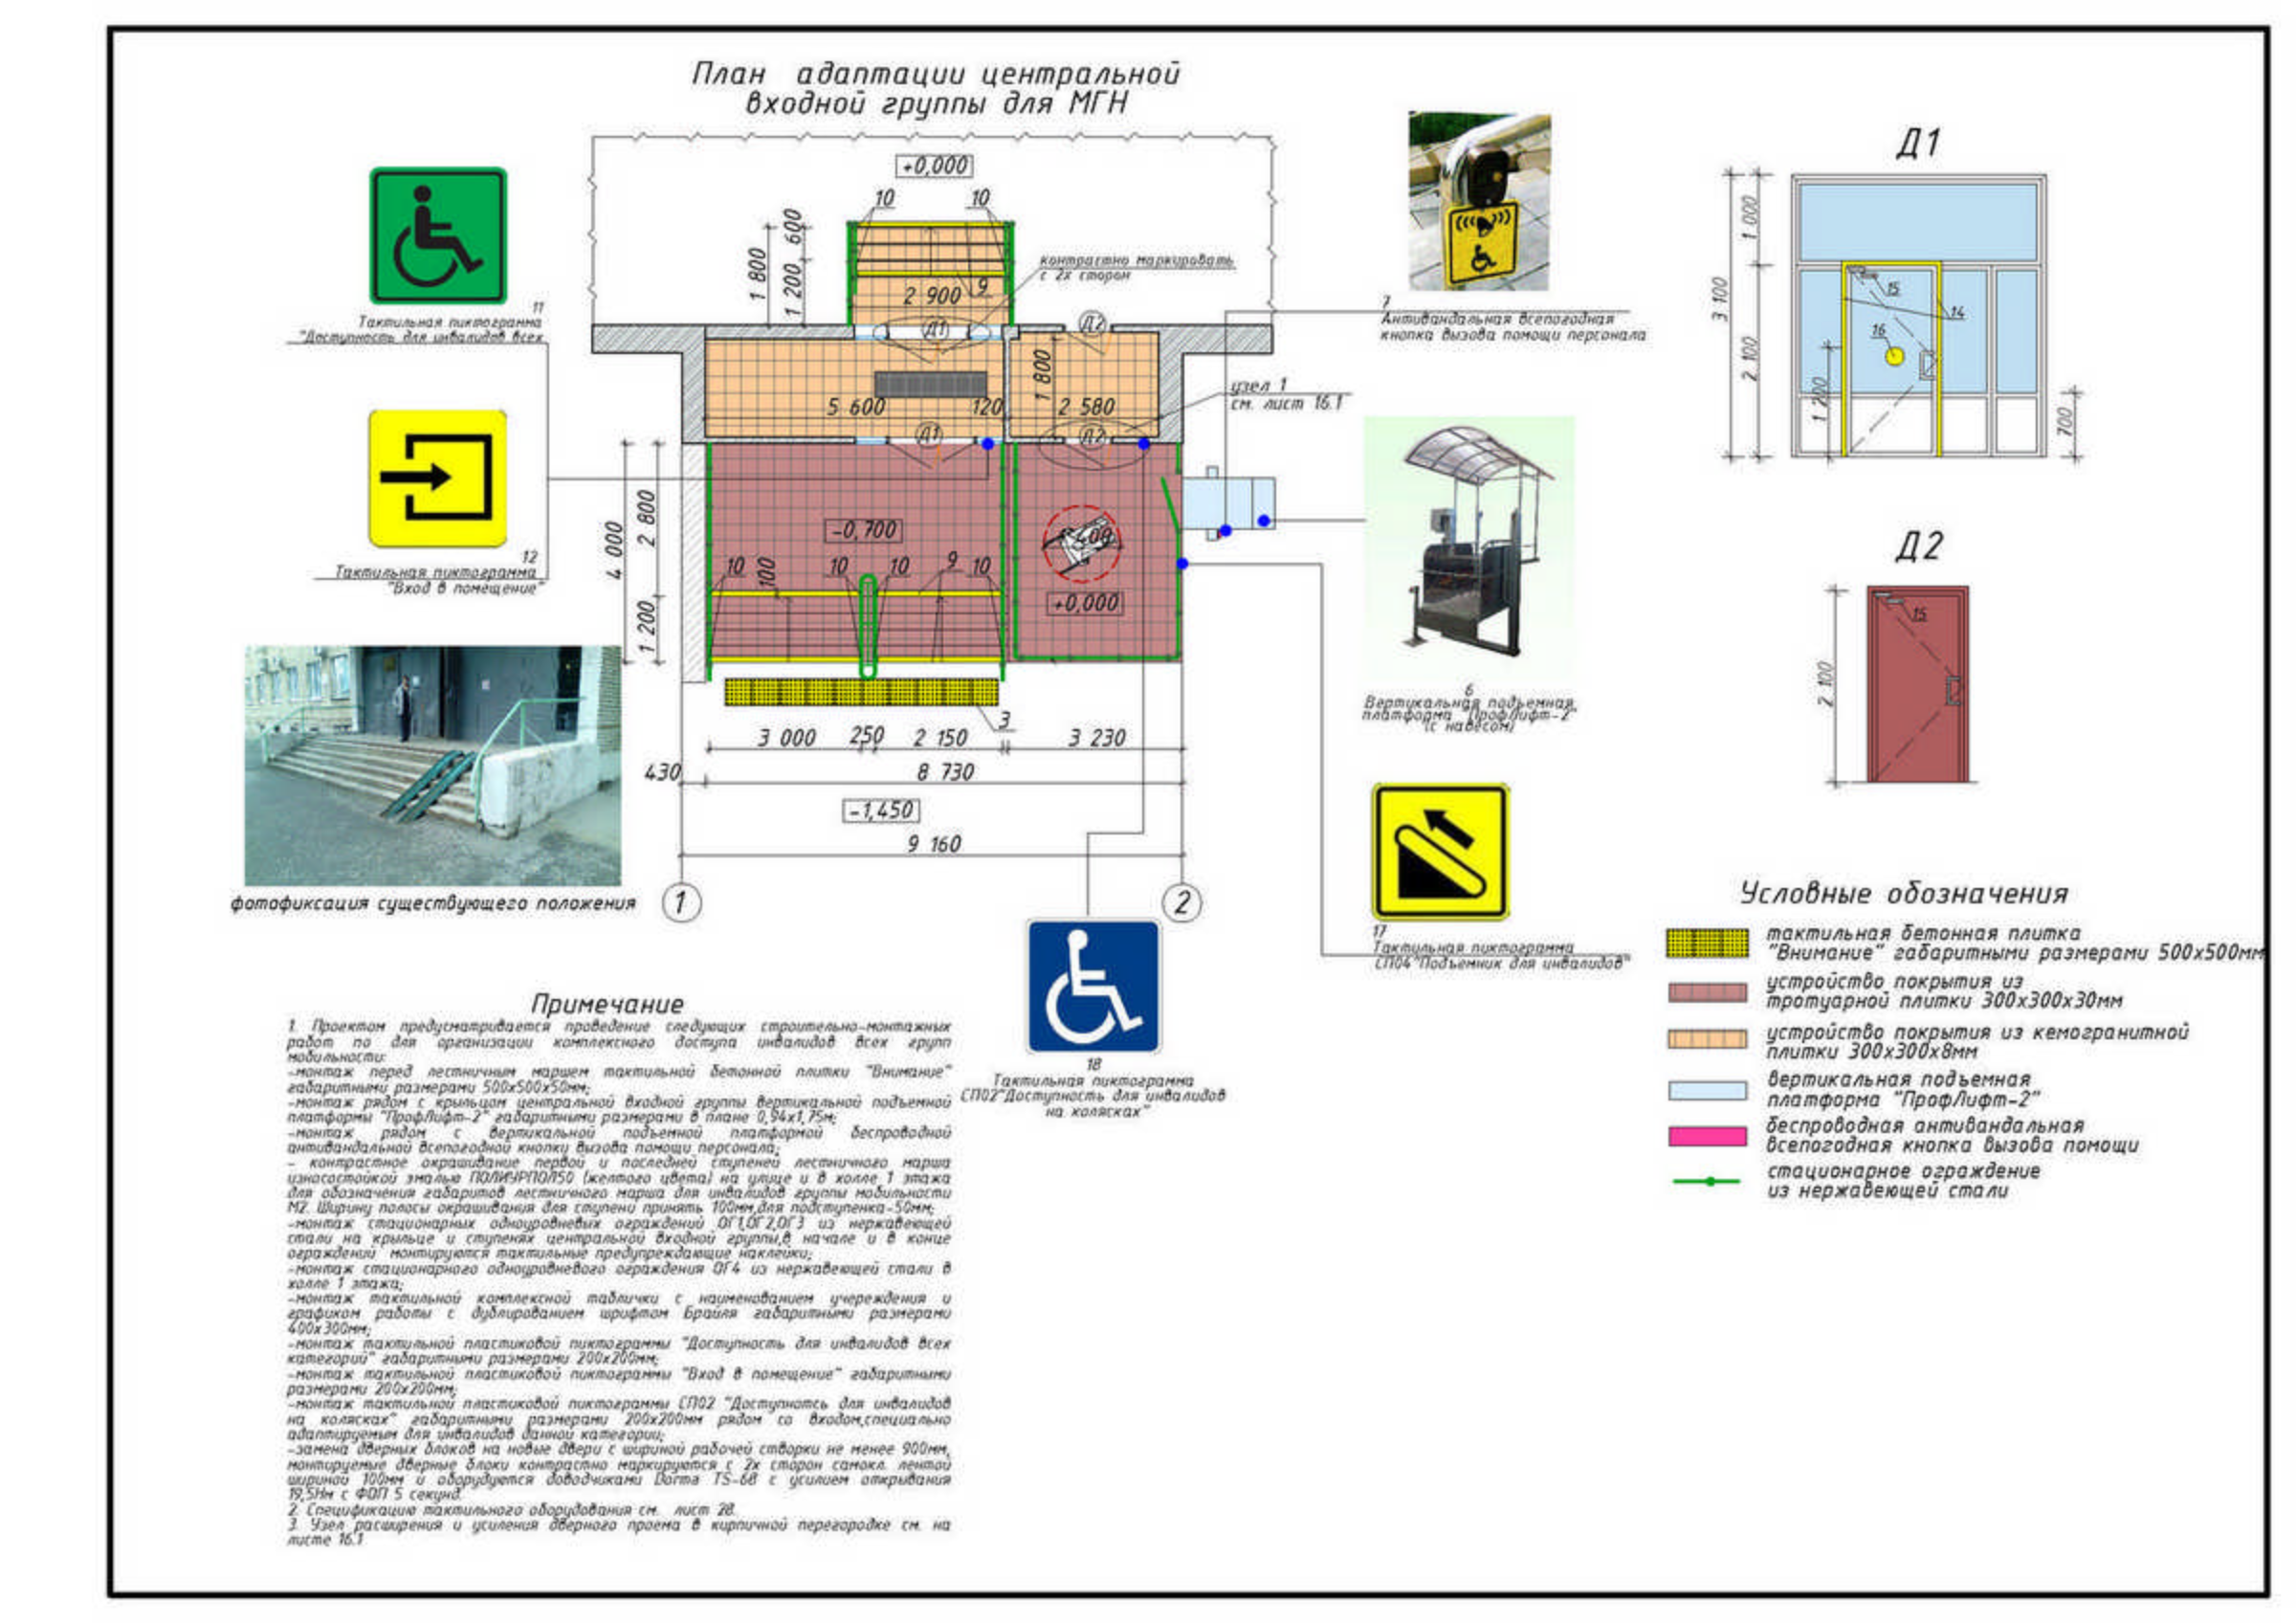 400 мгн. Пожаробезопасные зоны для МГН. Схема движения маломобильных групп населения по территории. Зона безопасности МГН В лифтовом холле. Площадь зоны безопасности для МГН м4.